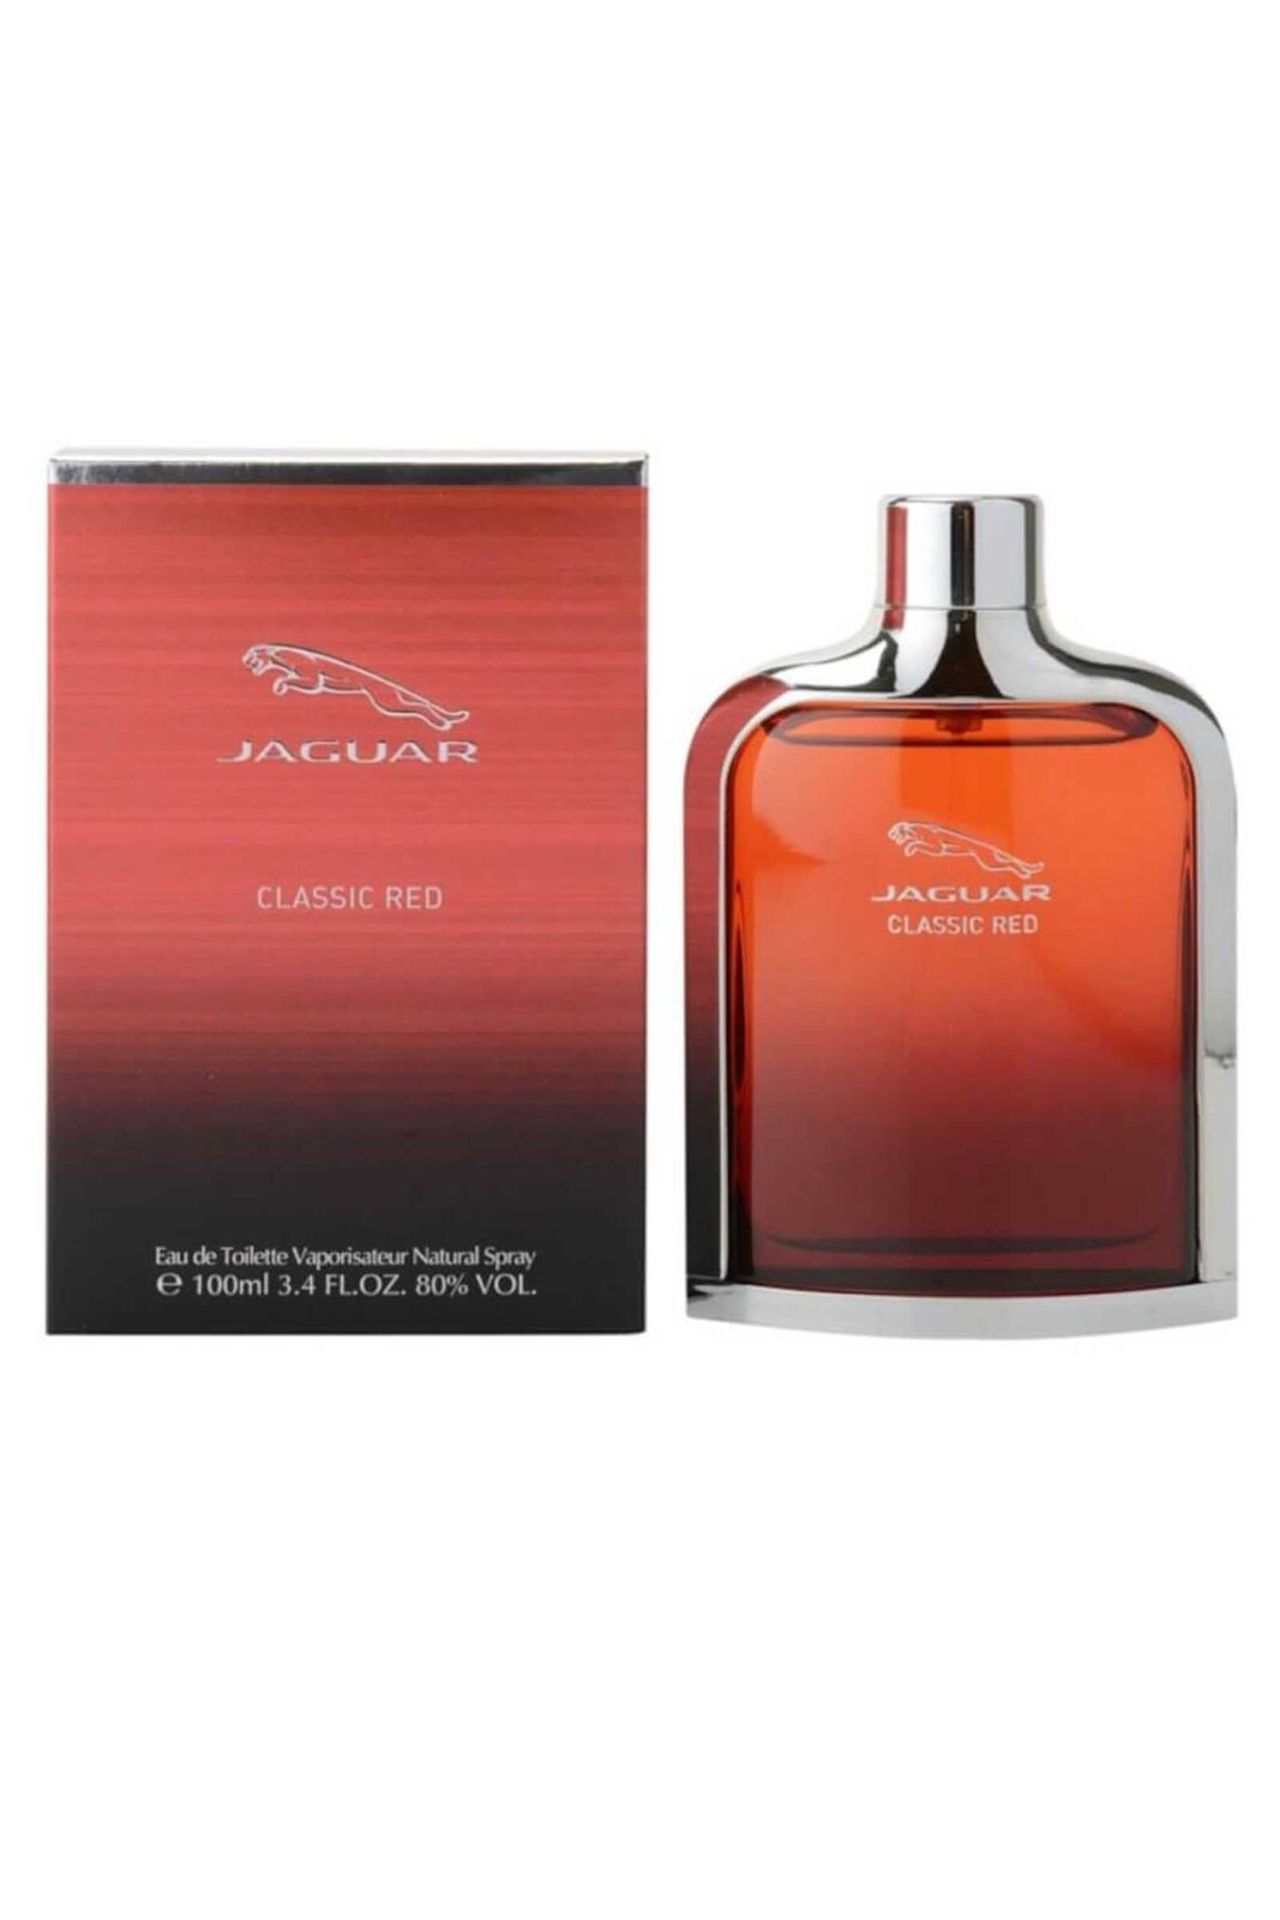 Jaguar Classic Red Eau de Toilette 100ml Spray - Image 3 of 3